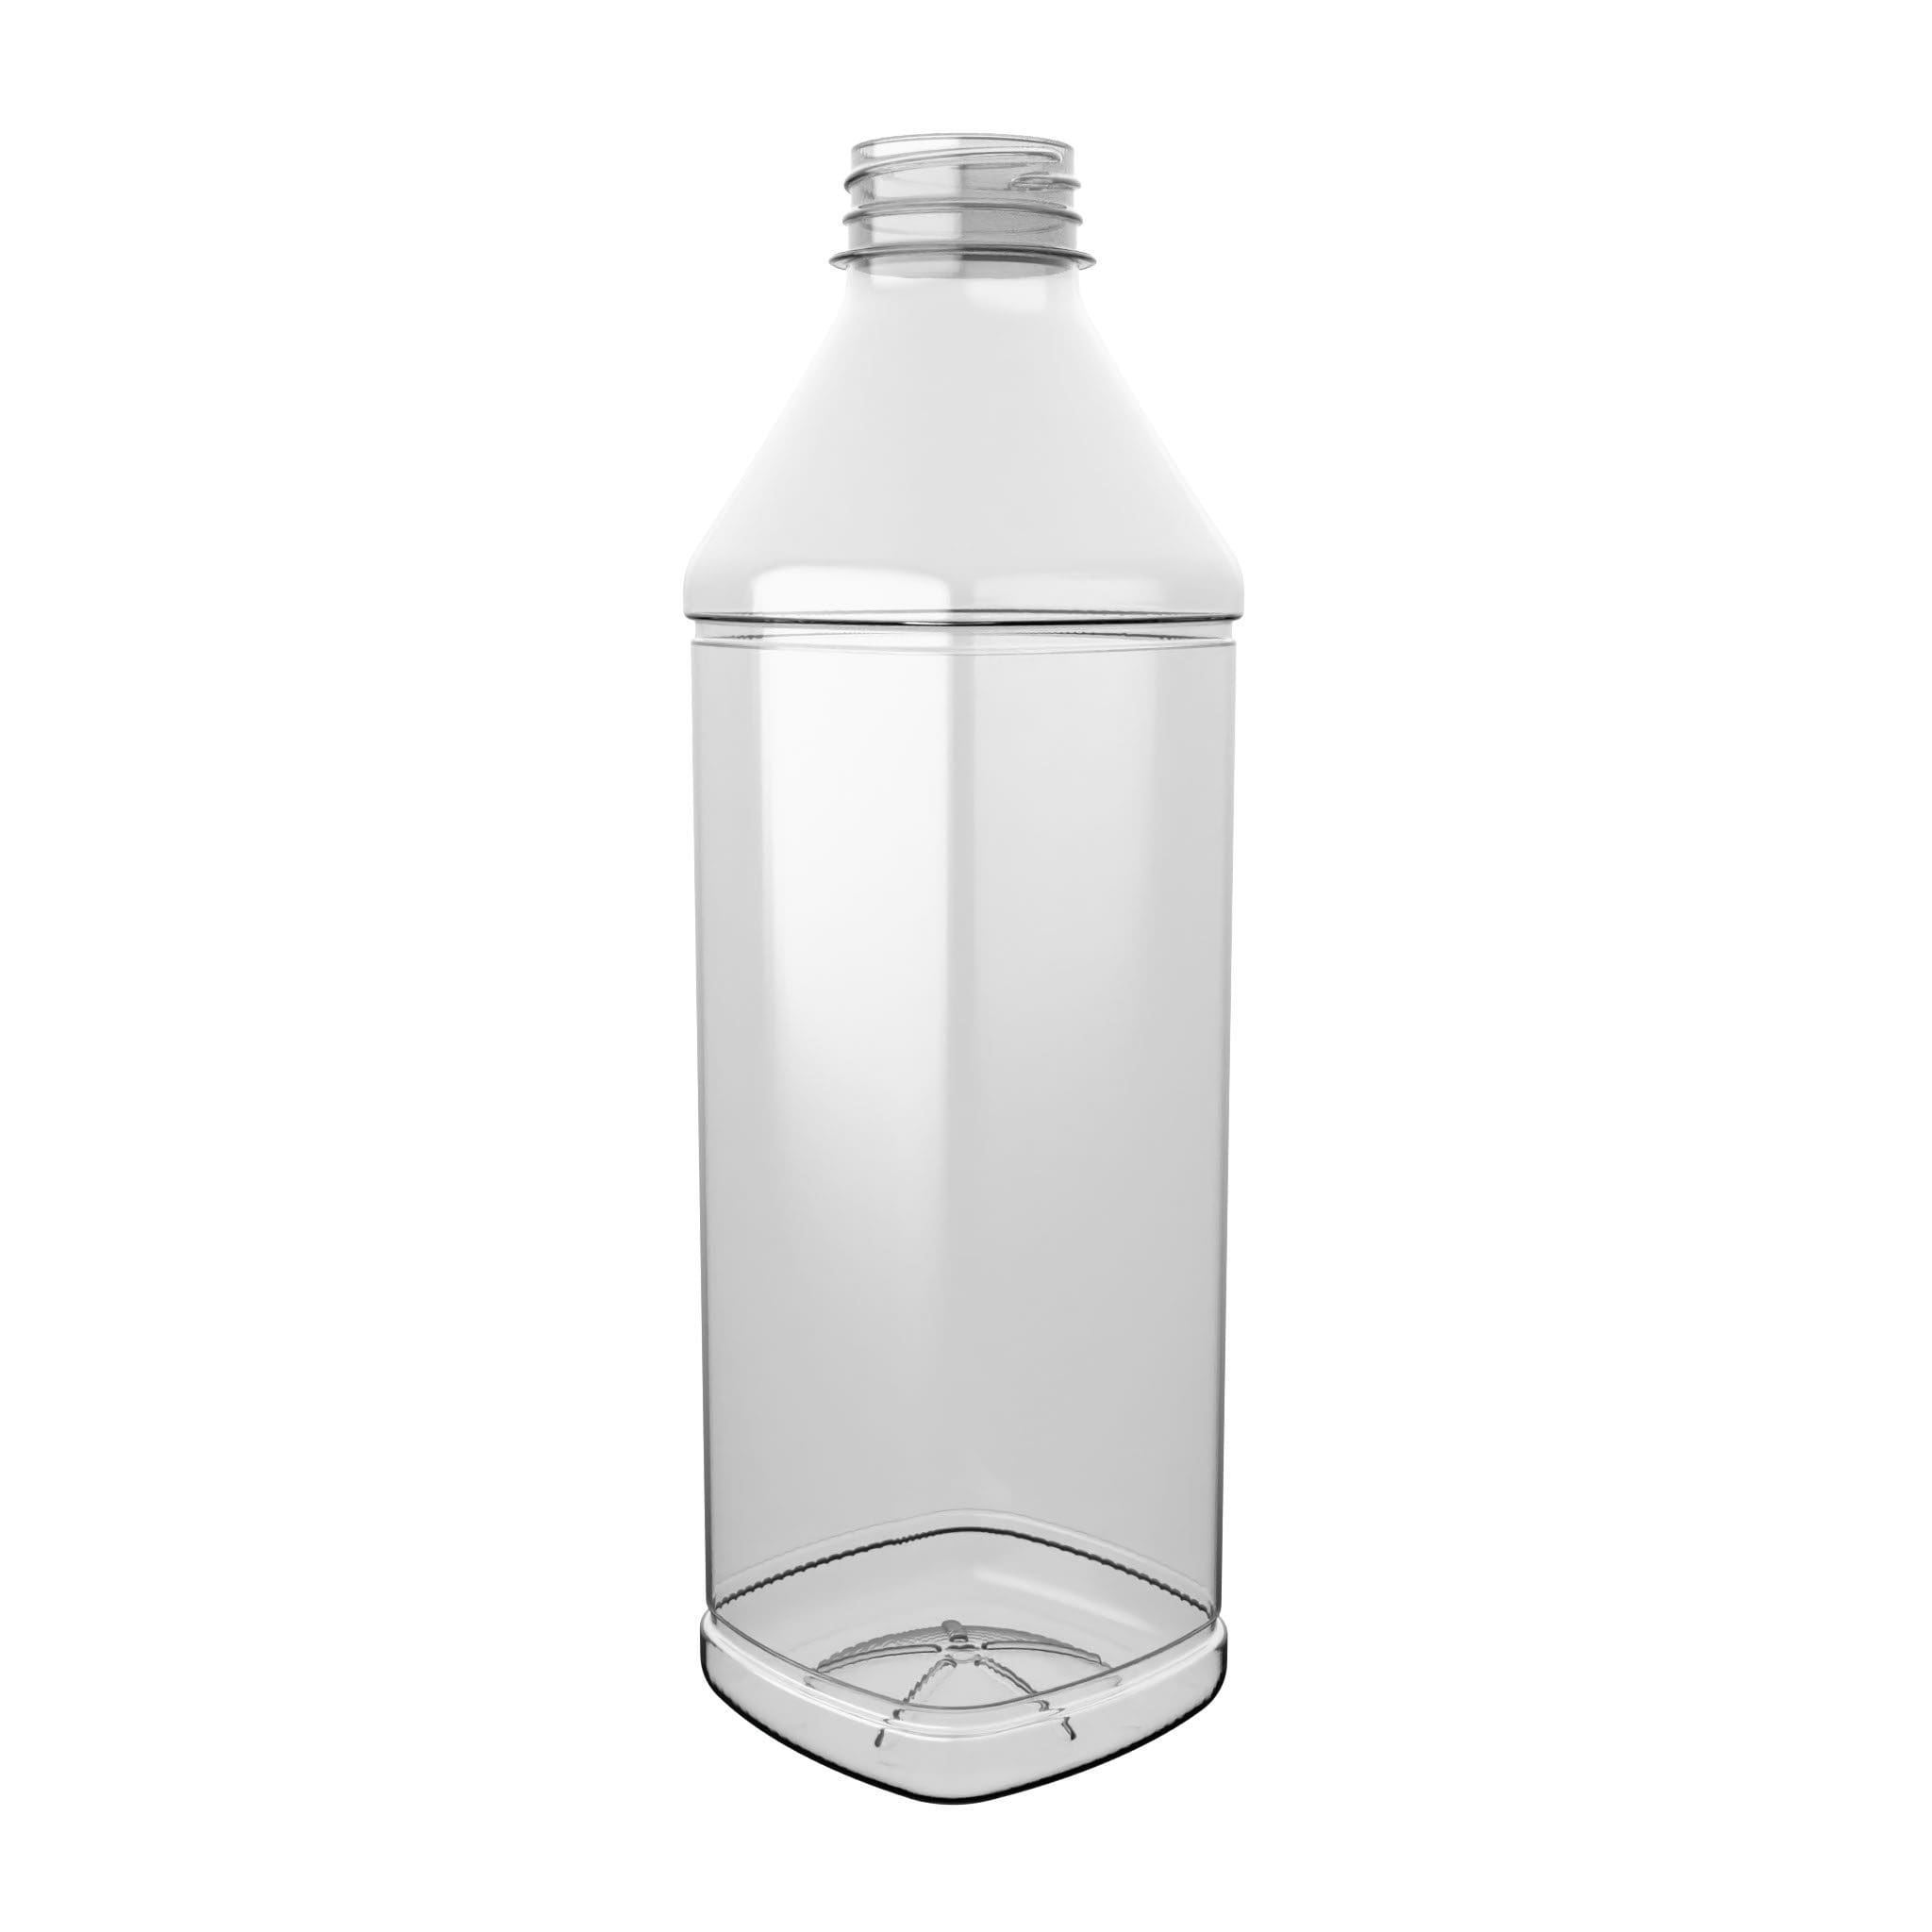 EPROJUICE SQUARE PET-Flasche von EPROPLAST in quadratischer Form.